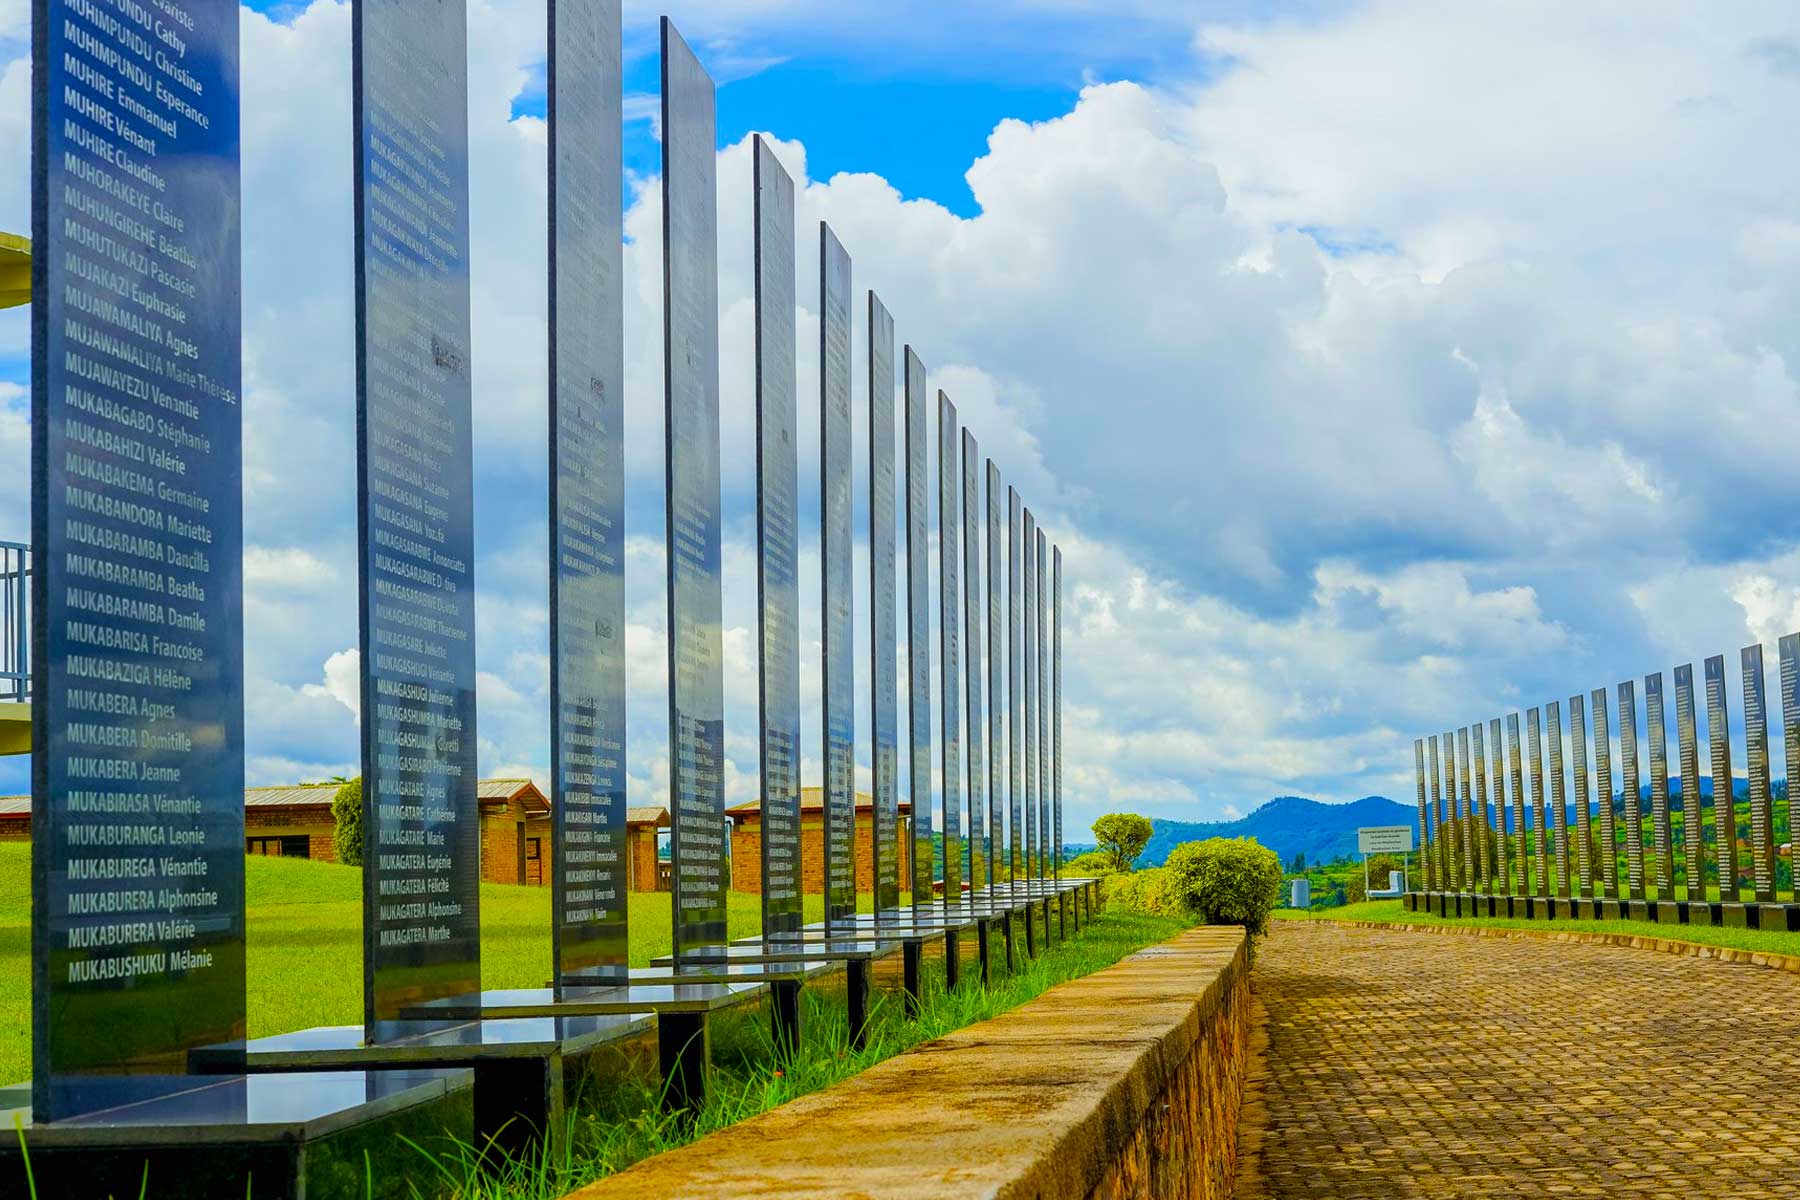 Visit Murambi Genocide Memorial